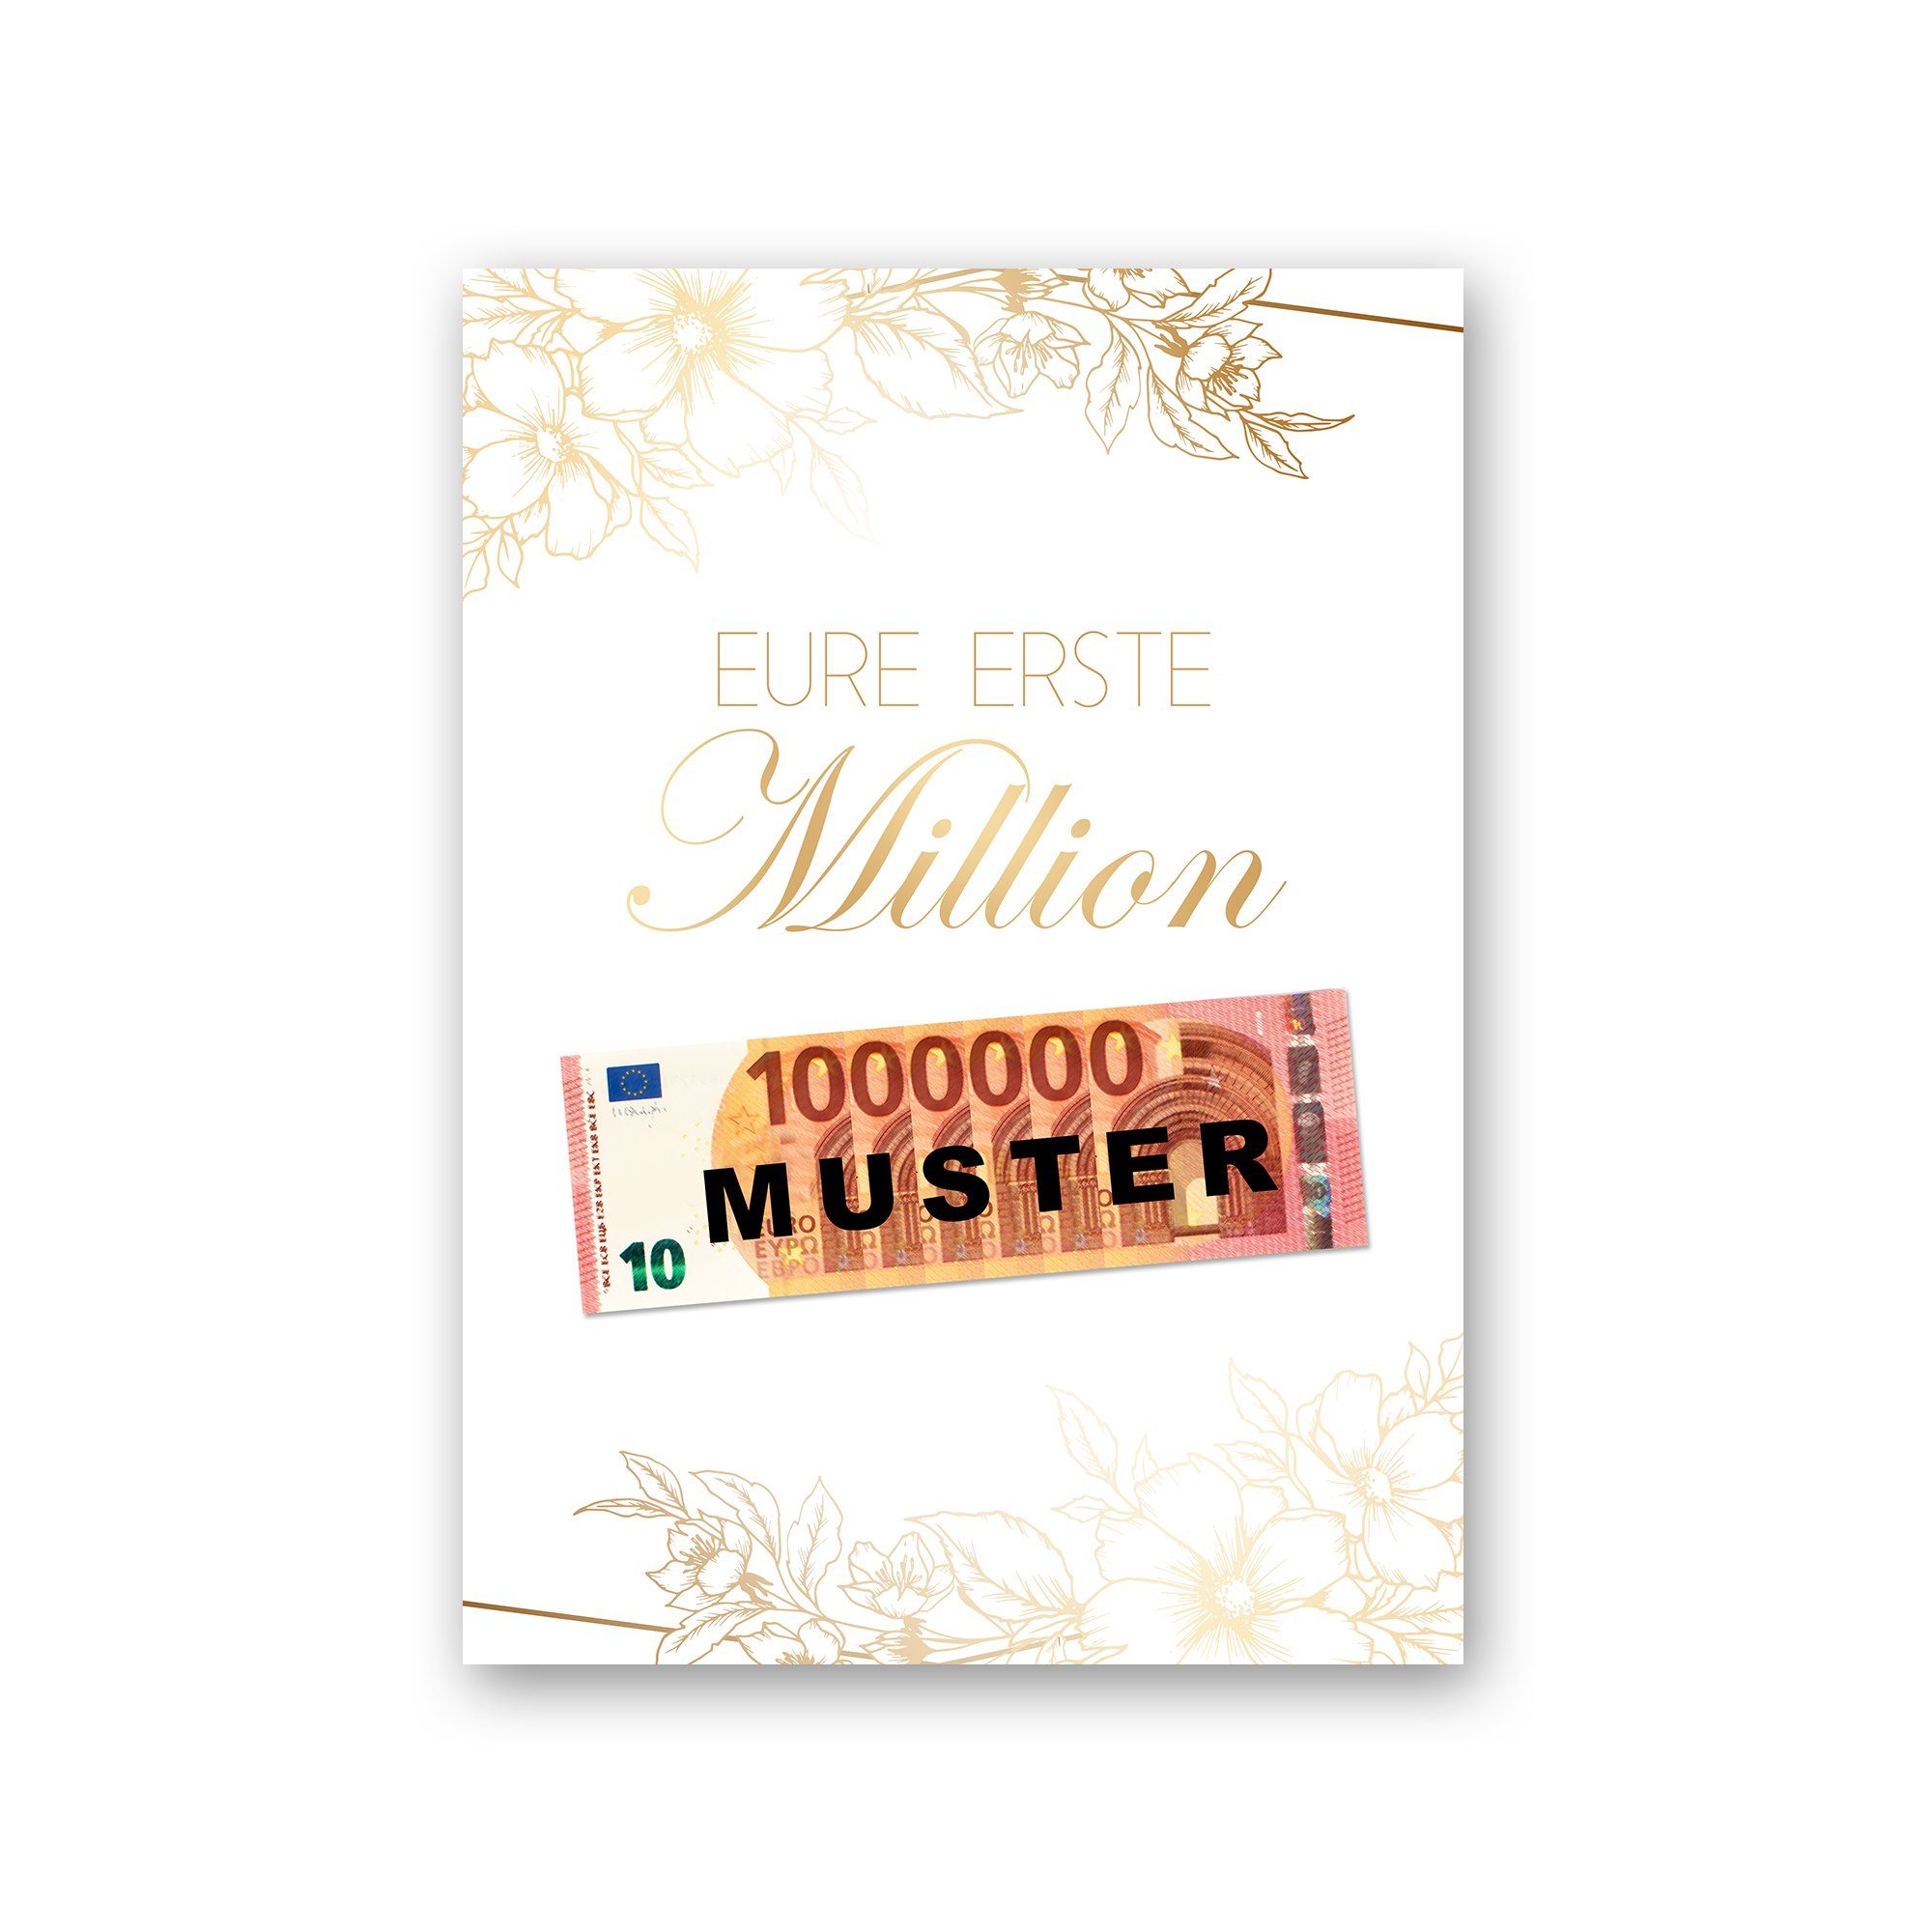 Kreative Feder Poster Premium Poster „Eure erste Million“ - Kunstdruck mit Blumen-Design, optional mit Rahmen; wahlweise DIN A4 oder DIN A3 schwarzer Rahmen